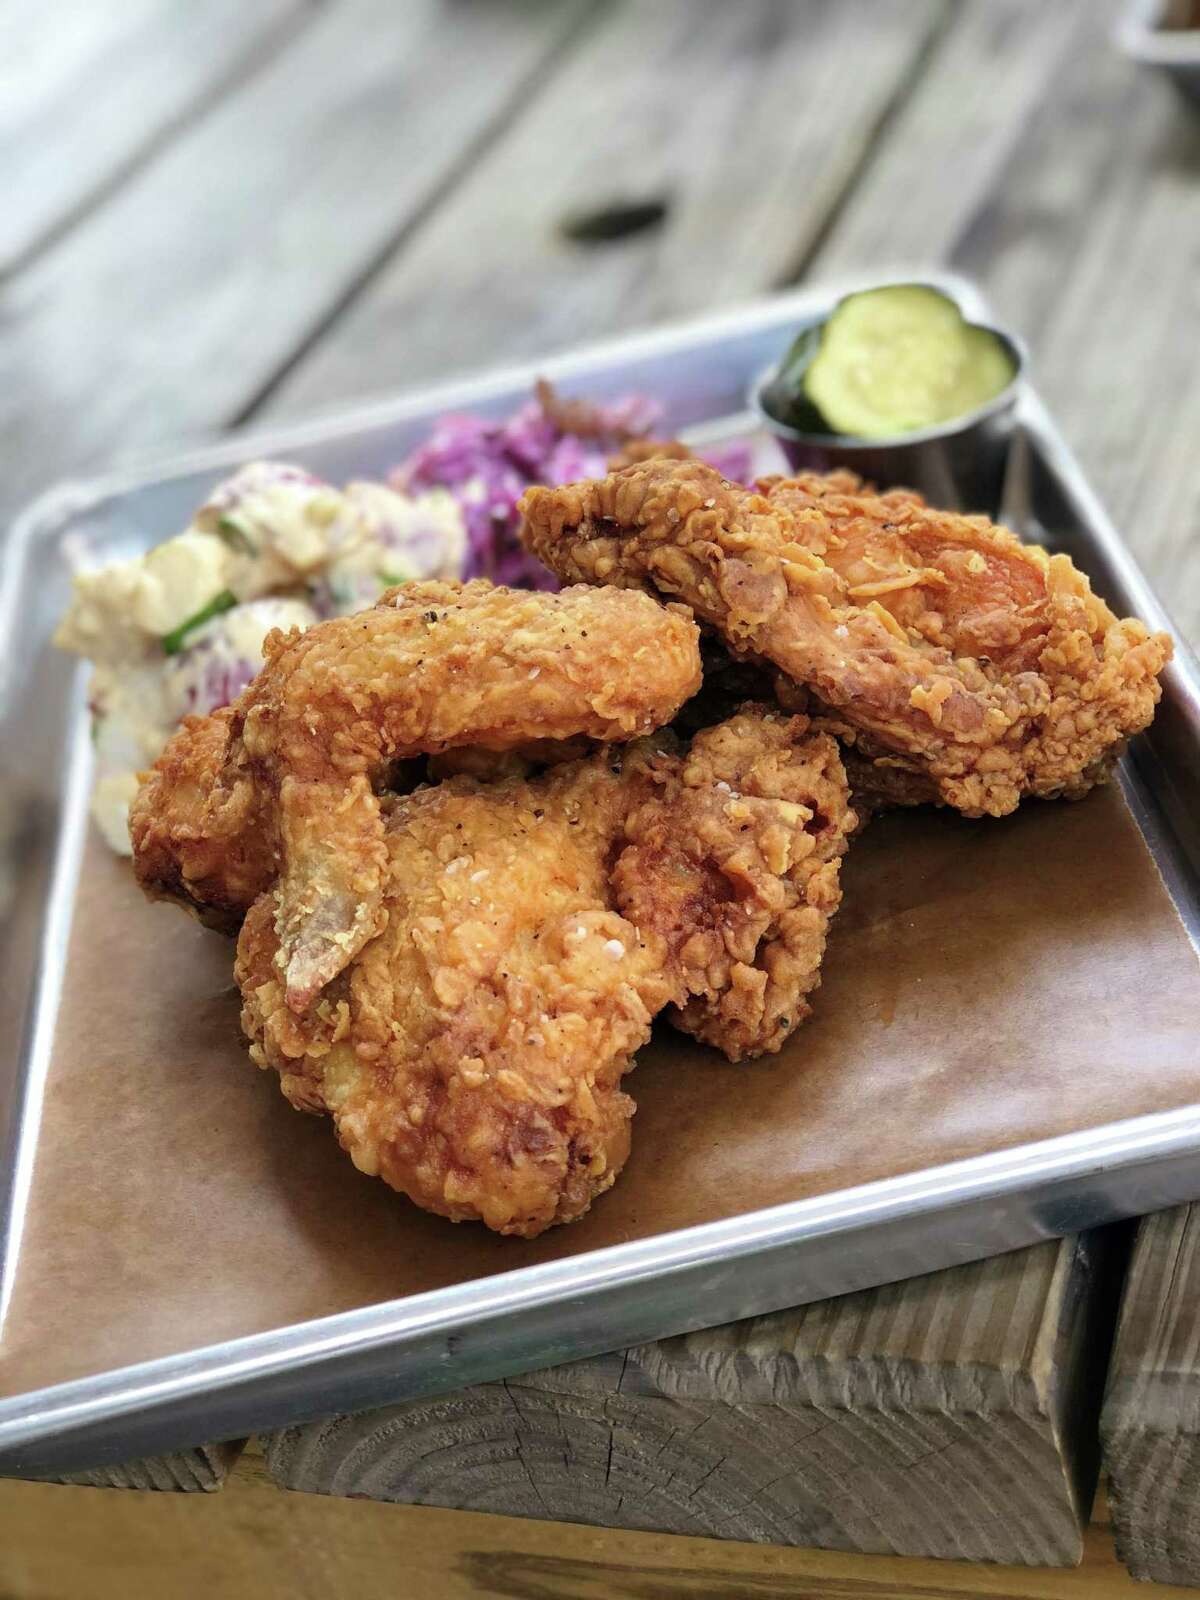 Houston’s hot, crispy fried chicken revival